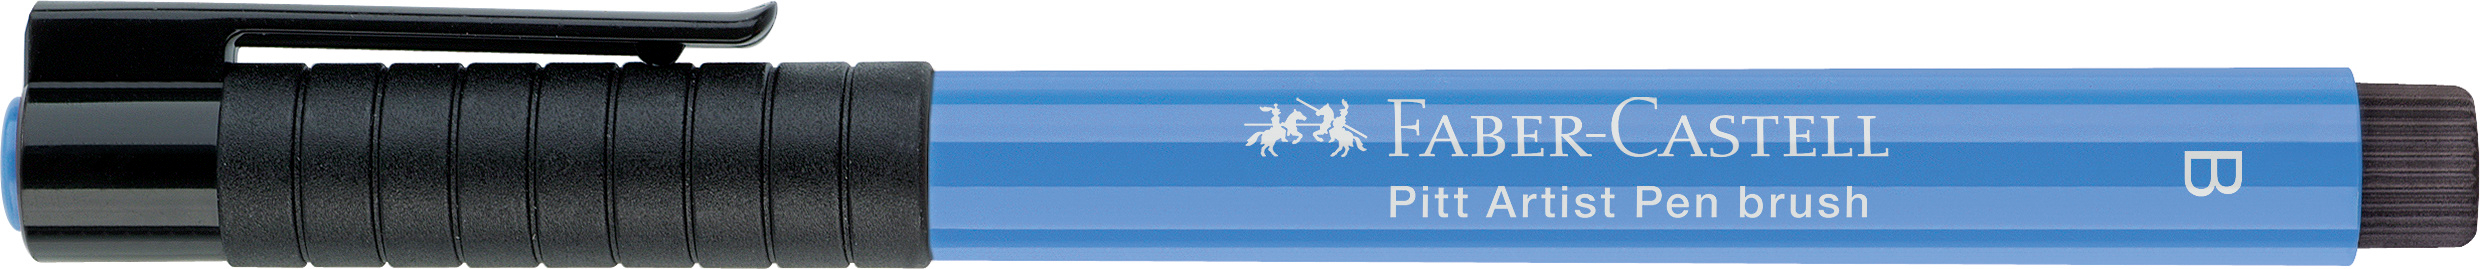 FABER-CASTELL Pitt Artist Pen Brush 2.5mm 167420 ultramarine ultramarine